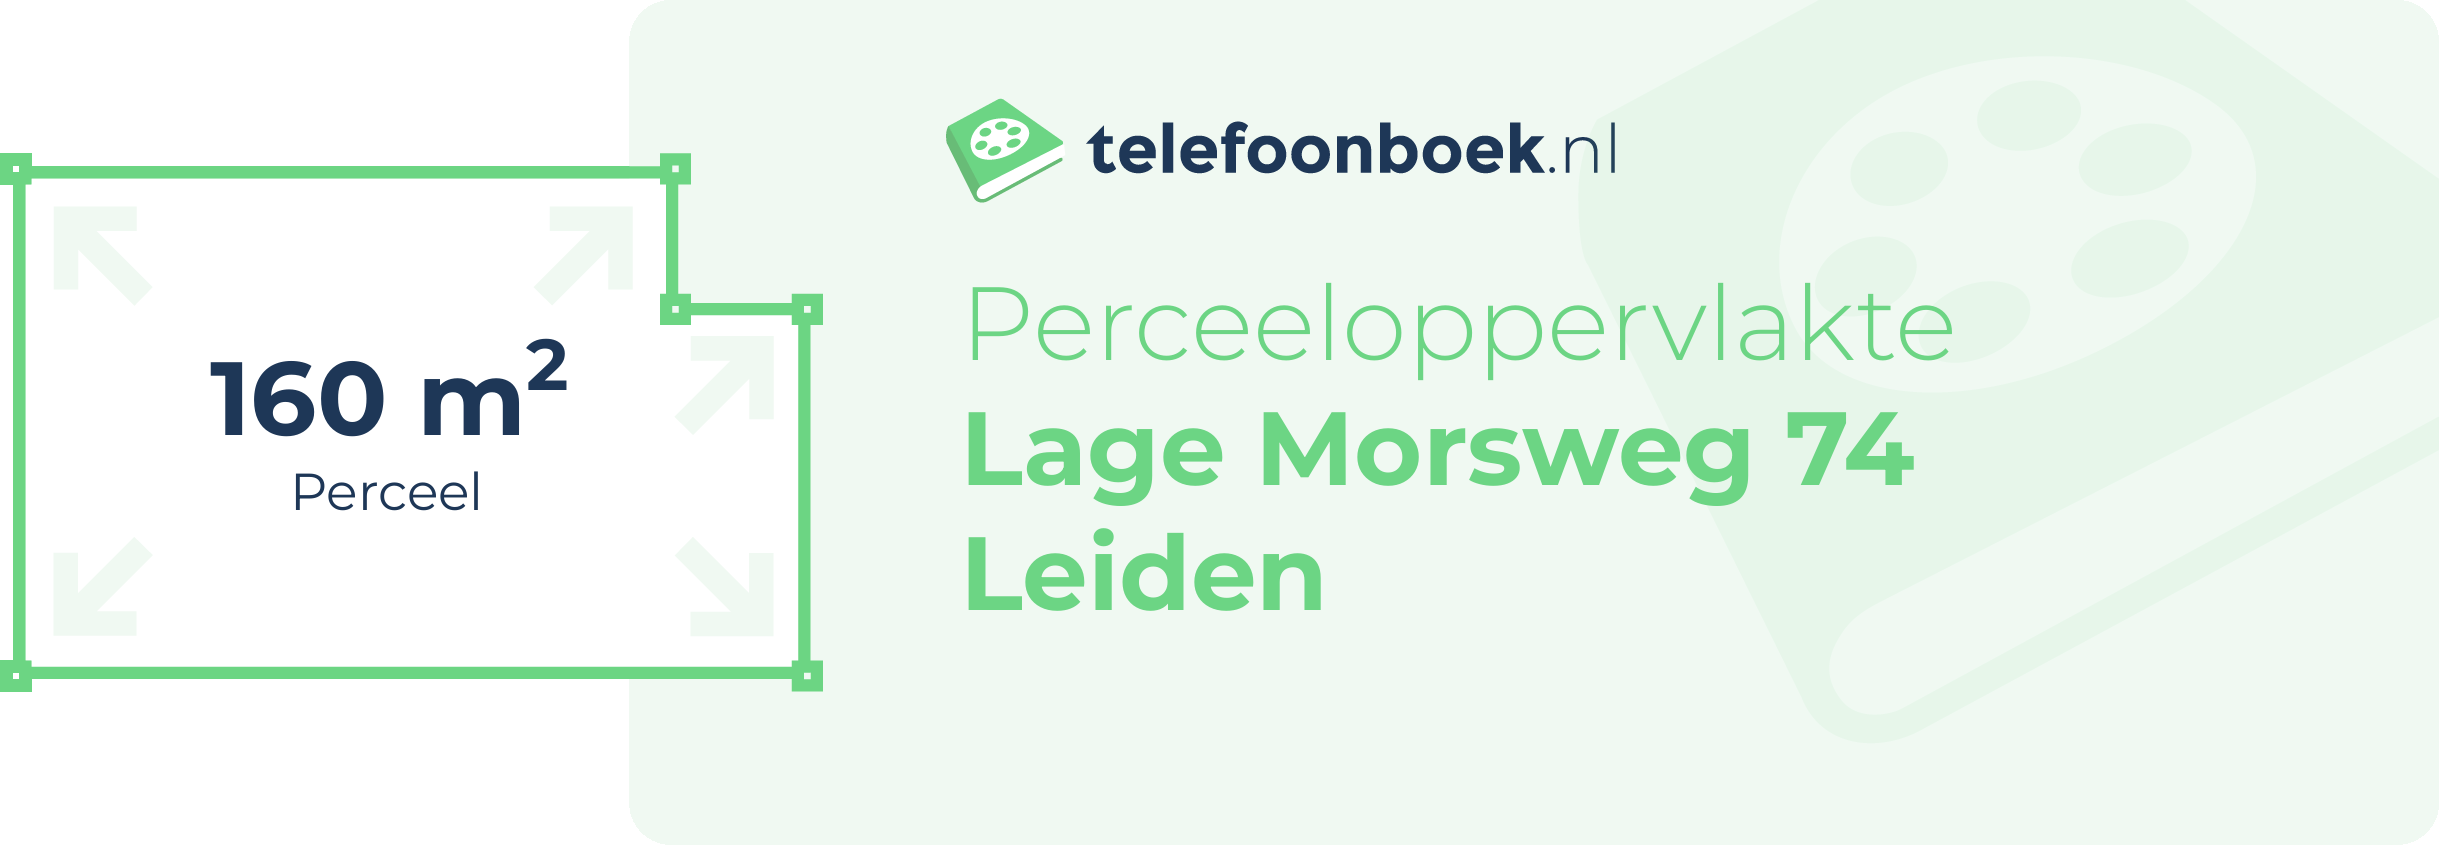 Perceeloppervlakte Lage Morsweg 74 Leiden